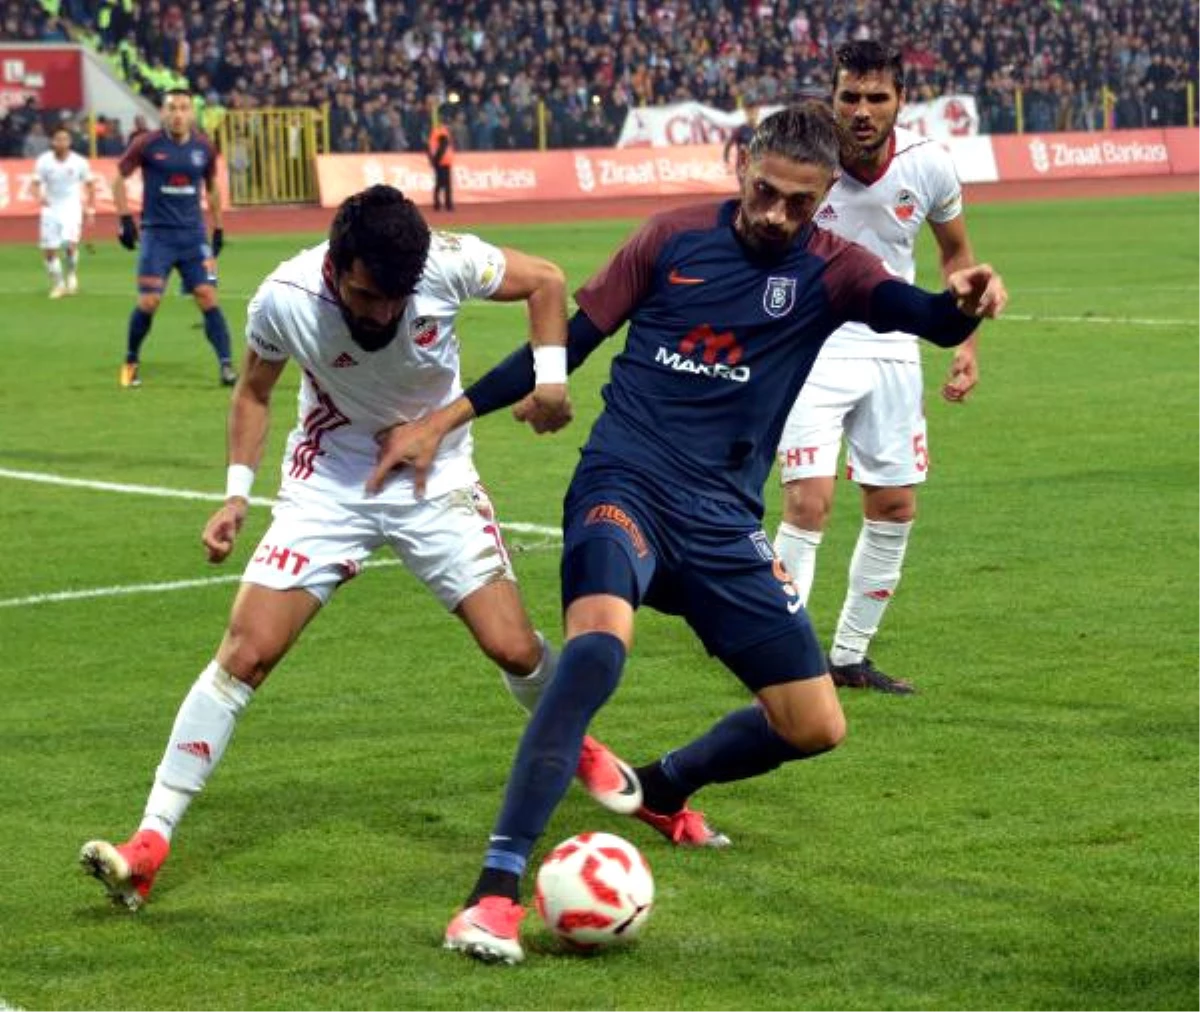 Kipaş Kahramanmaraşspor - Medipol Başakşehir: 1-3